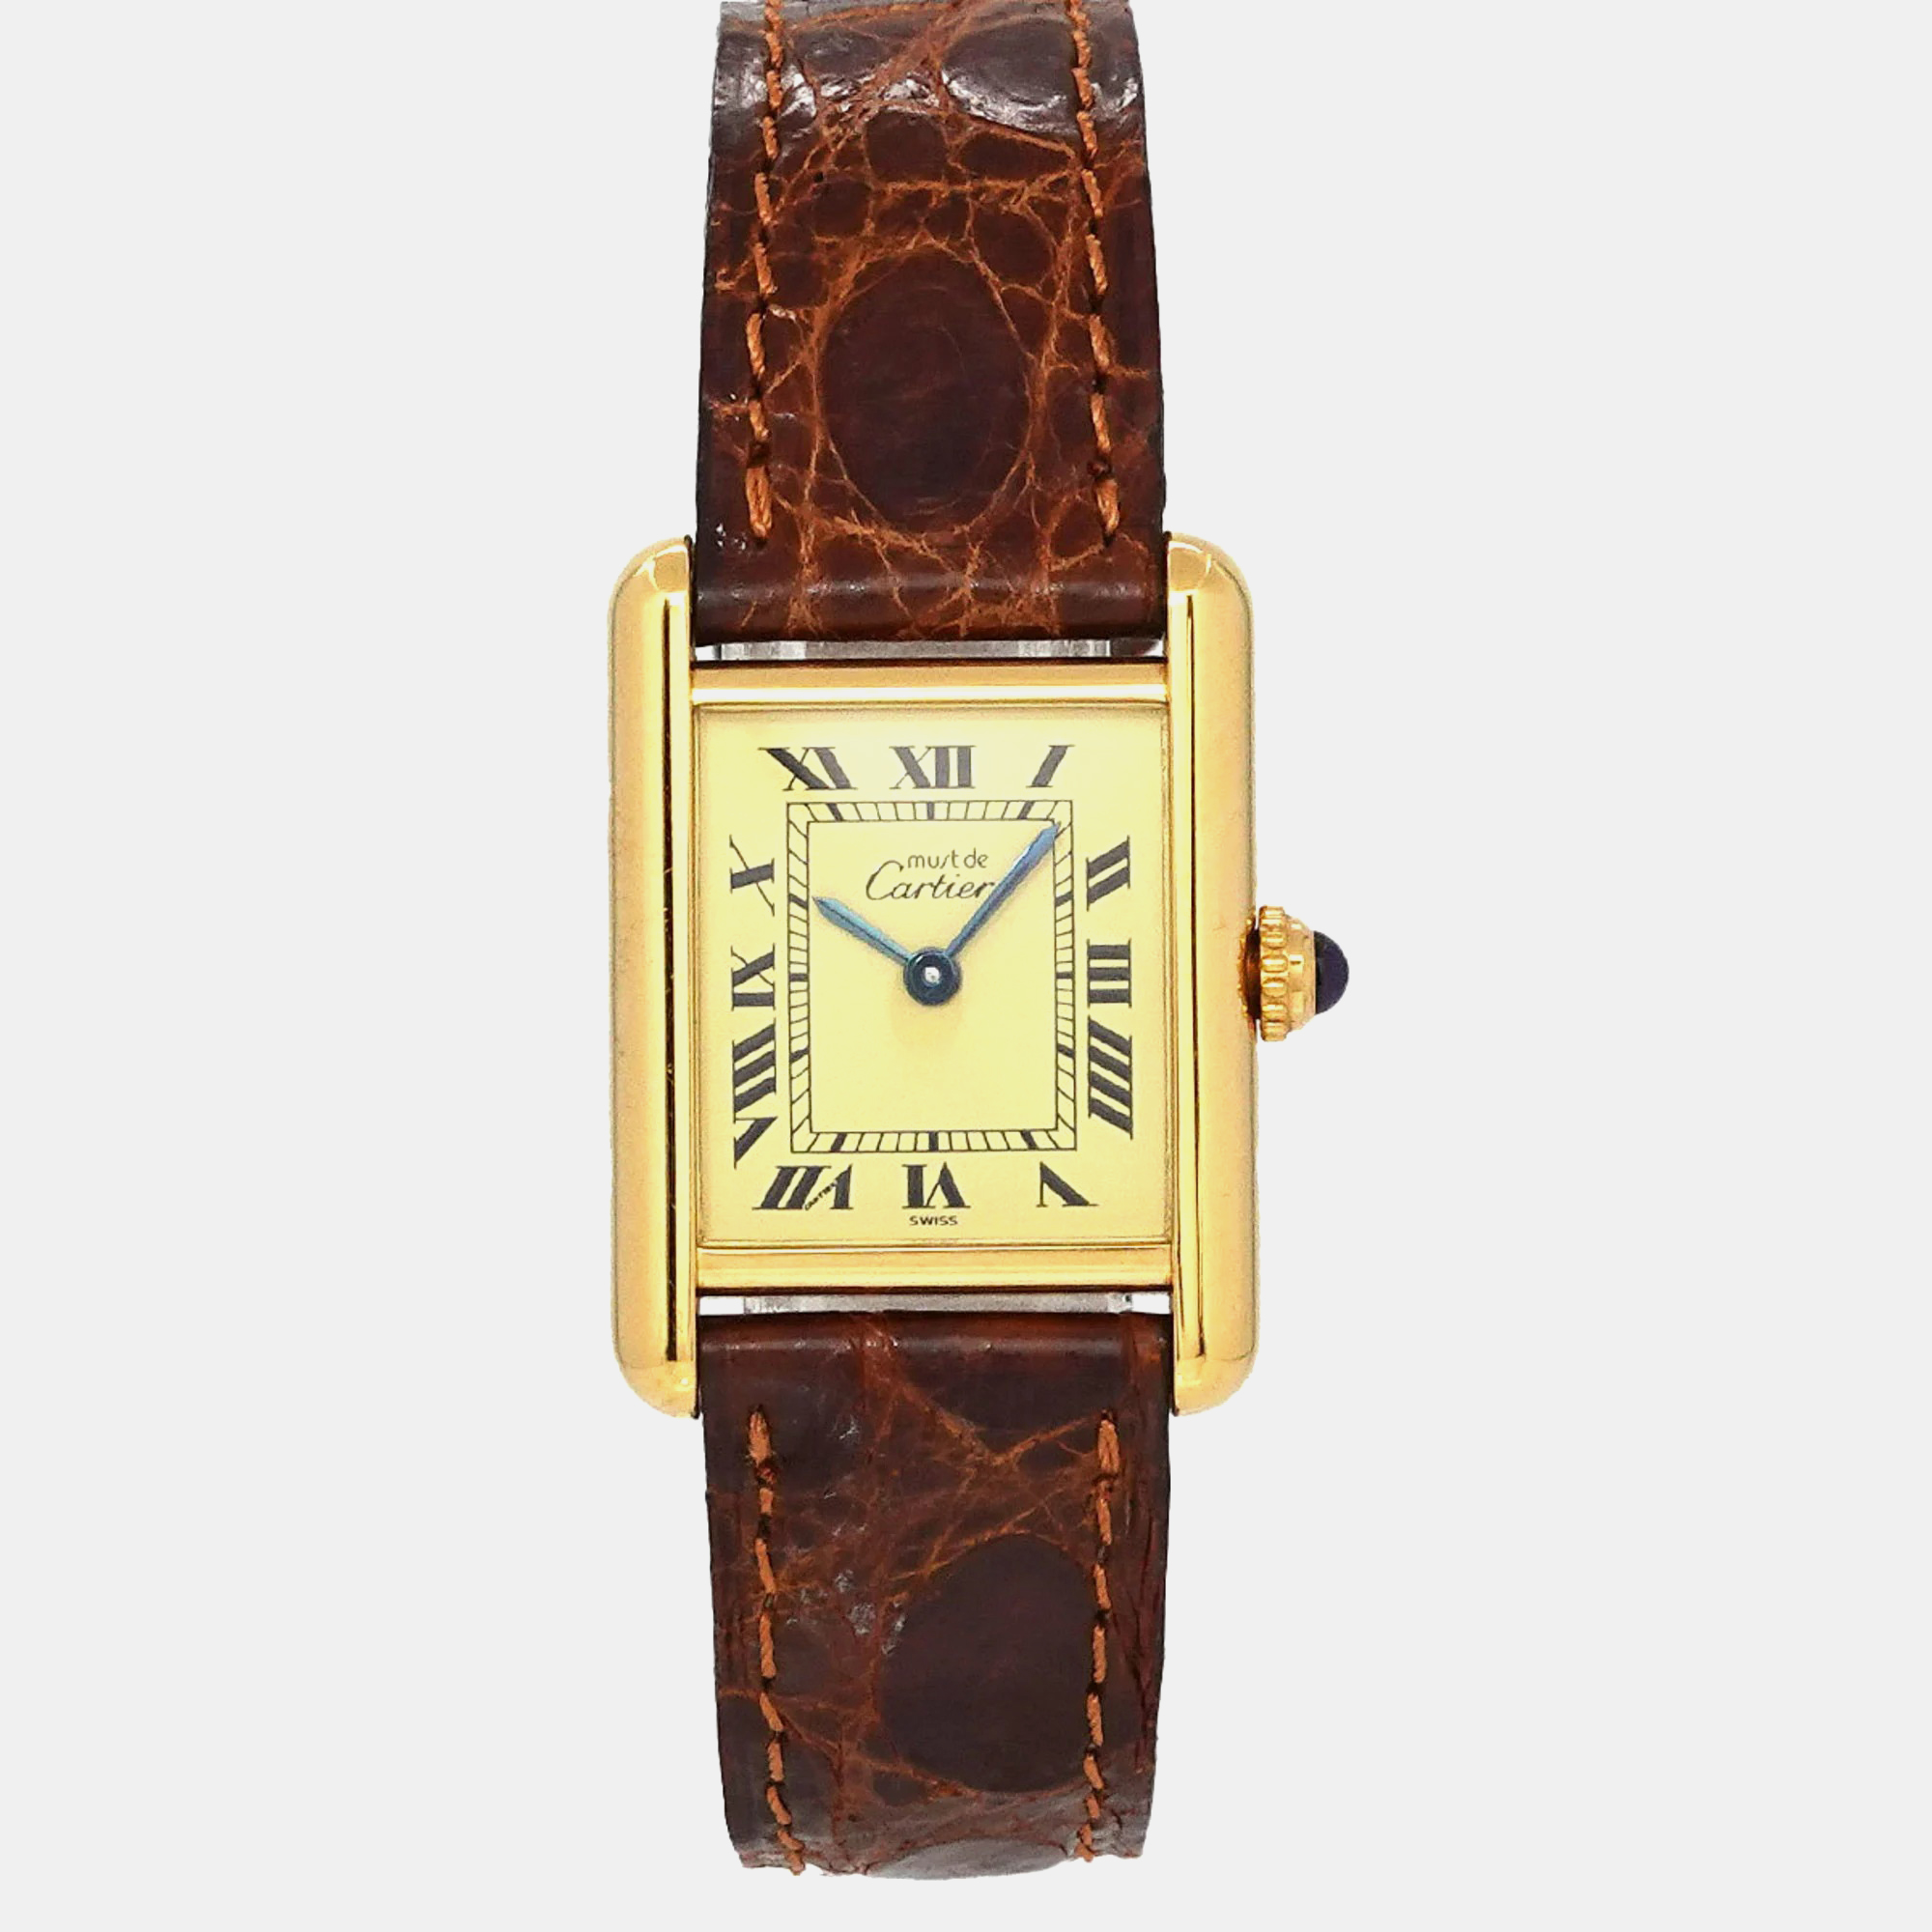 Cartier ivory silver 925 must de cartier quartz women's wristwatch 20 mm